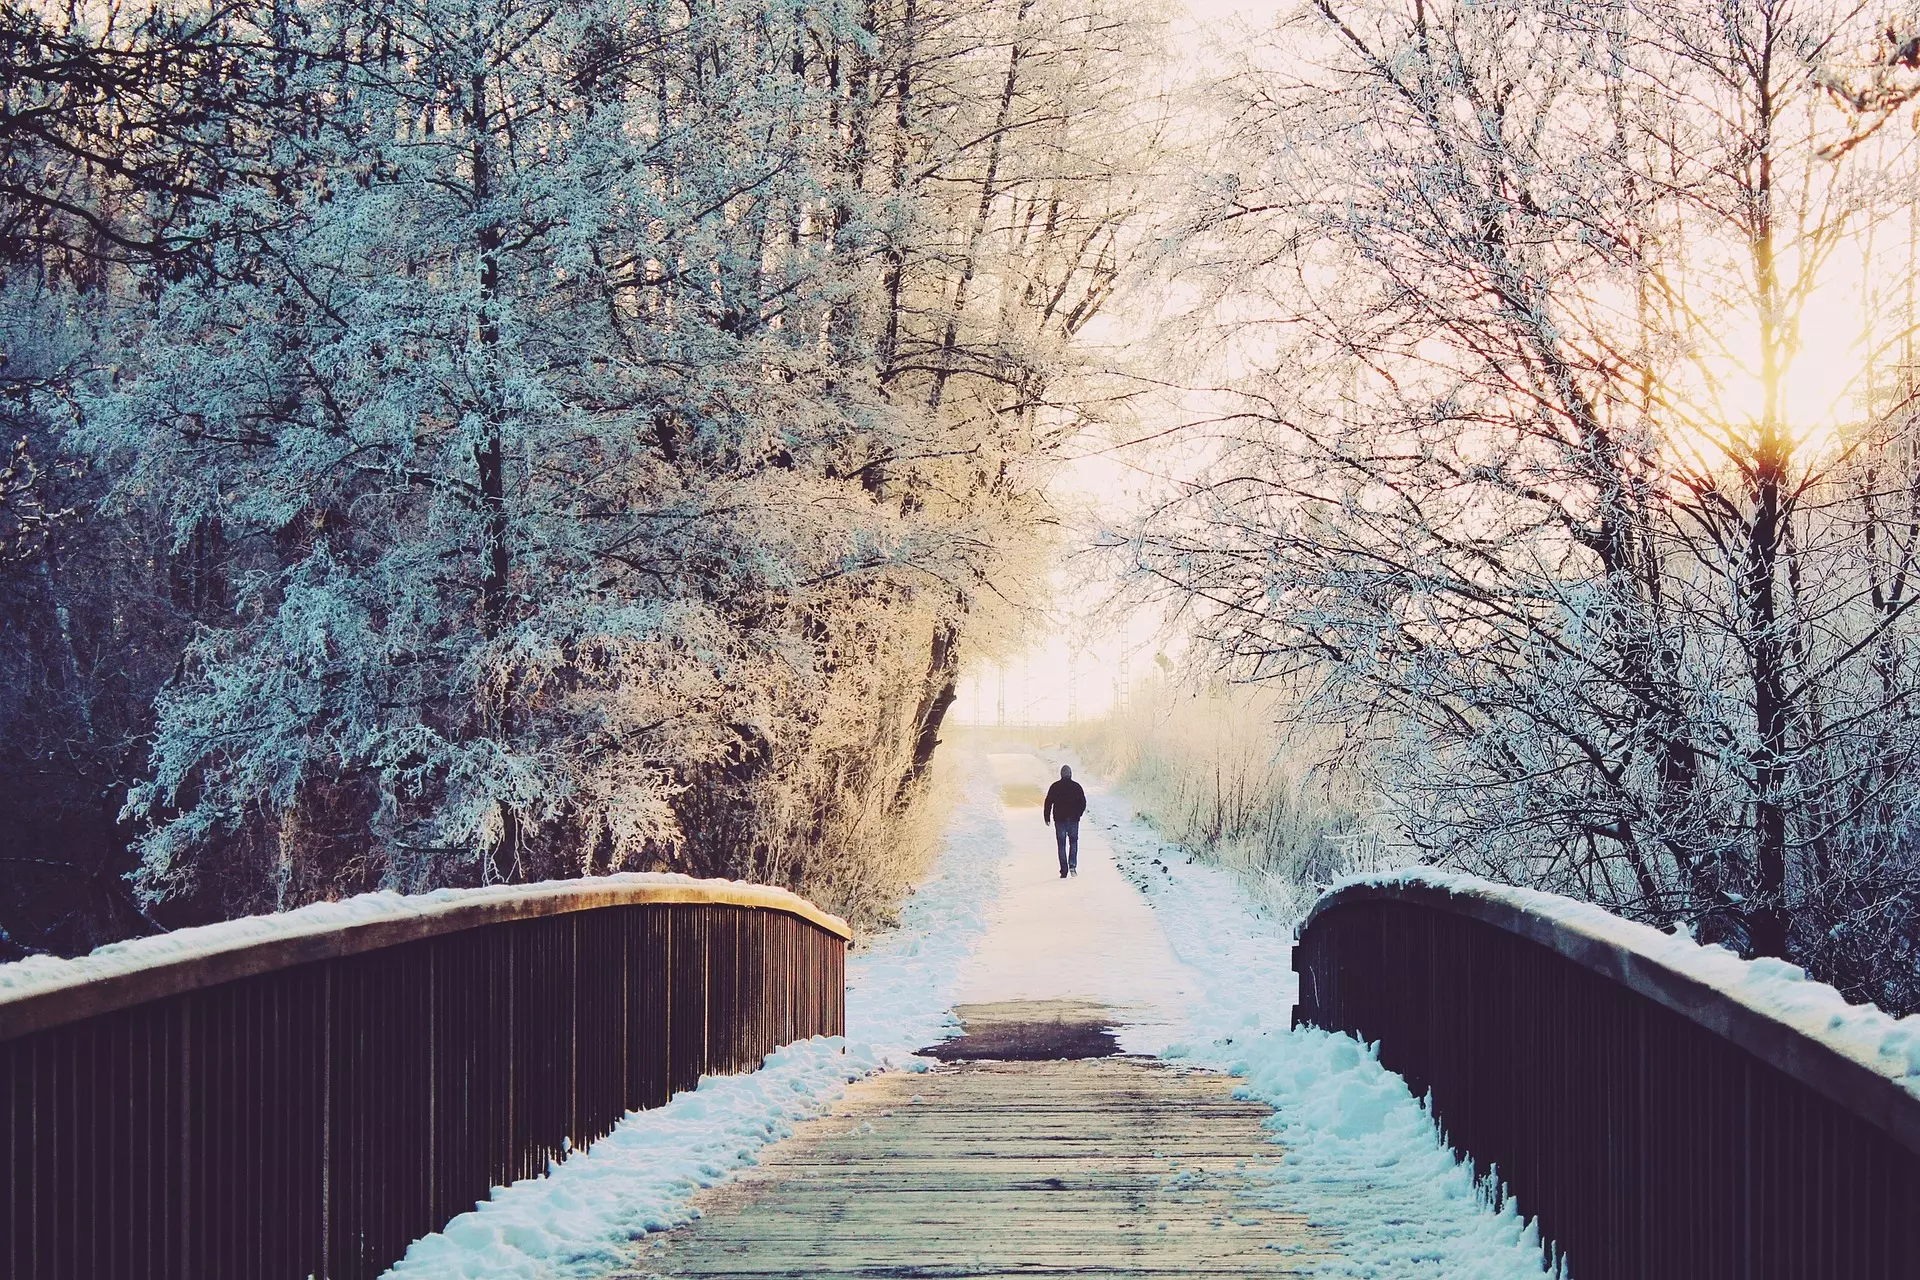 une personne marchant sur un chemin enneigé avec une passerelle - Image par Kati de https://pixabay.com/fr/photos/homme-pont-solitaire-se-promener-1156619/